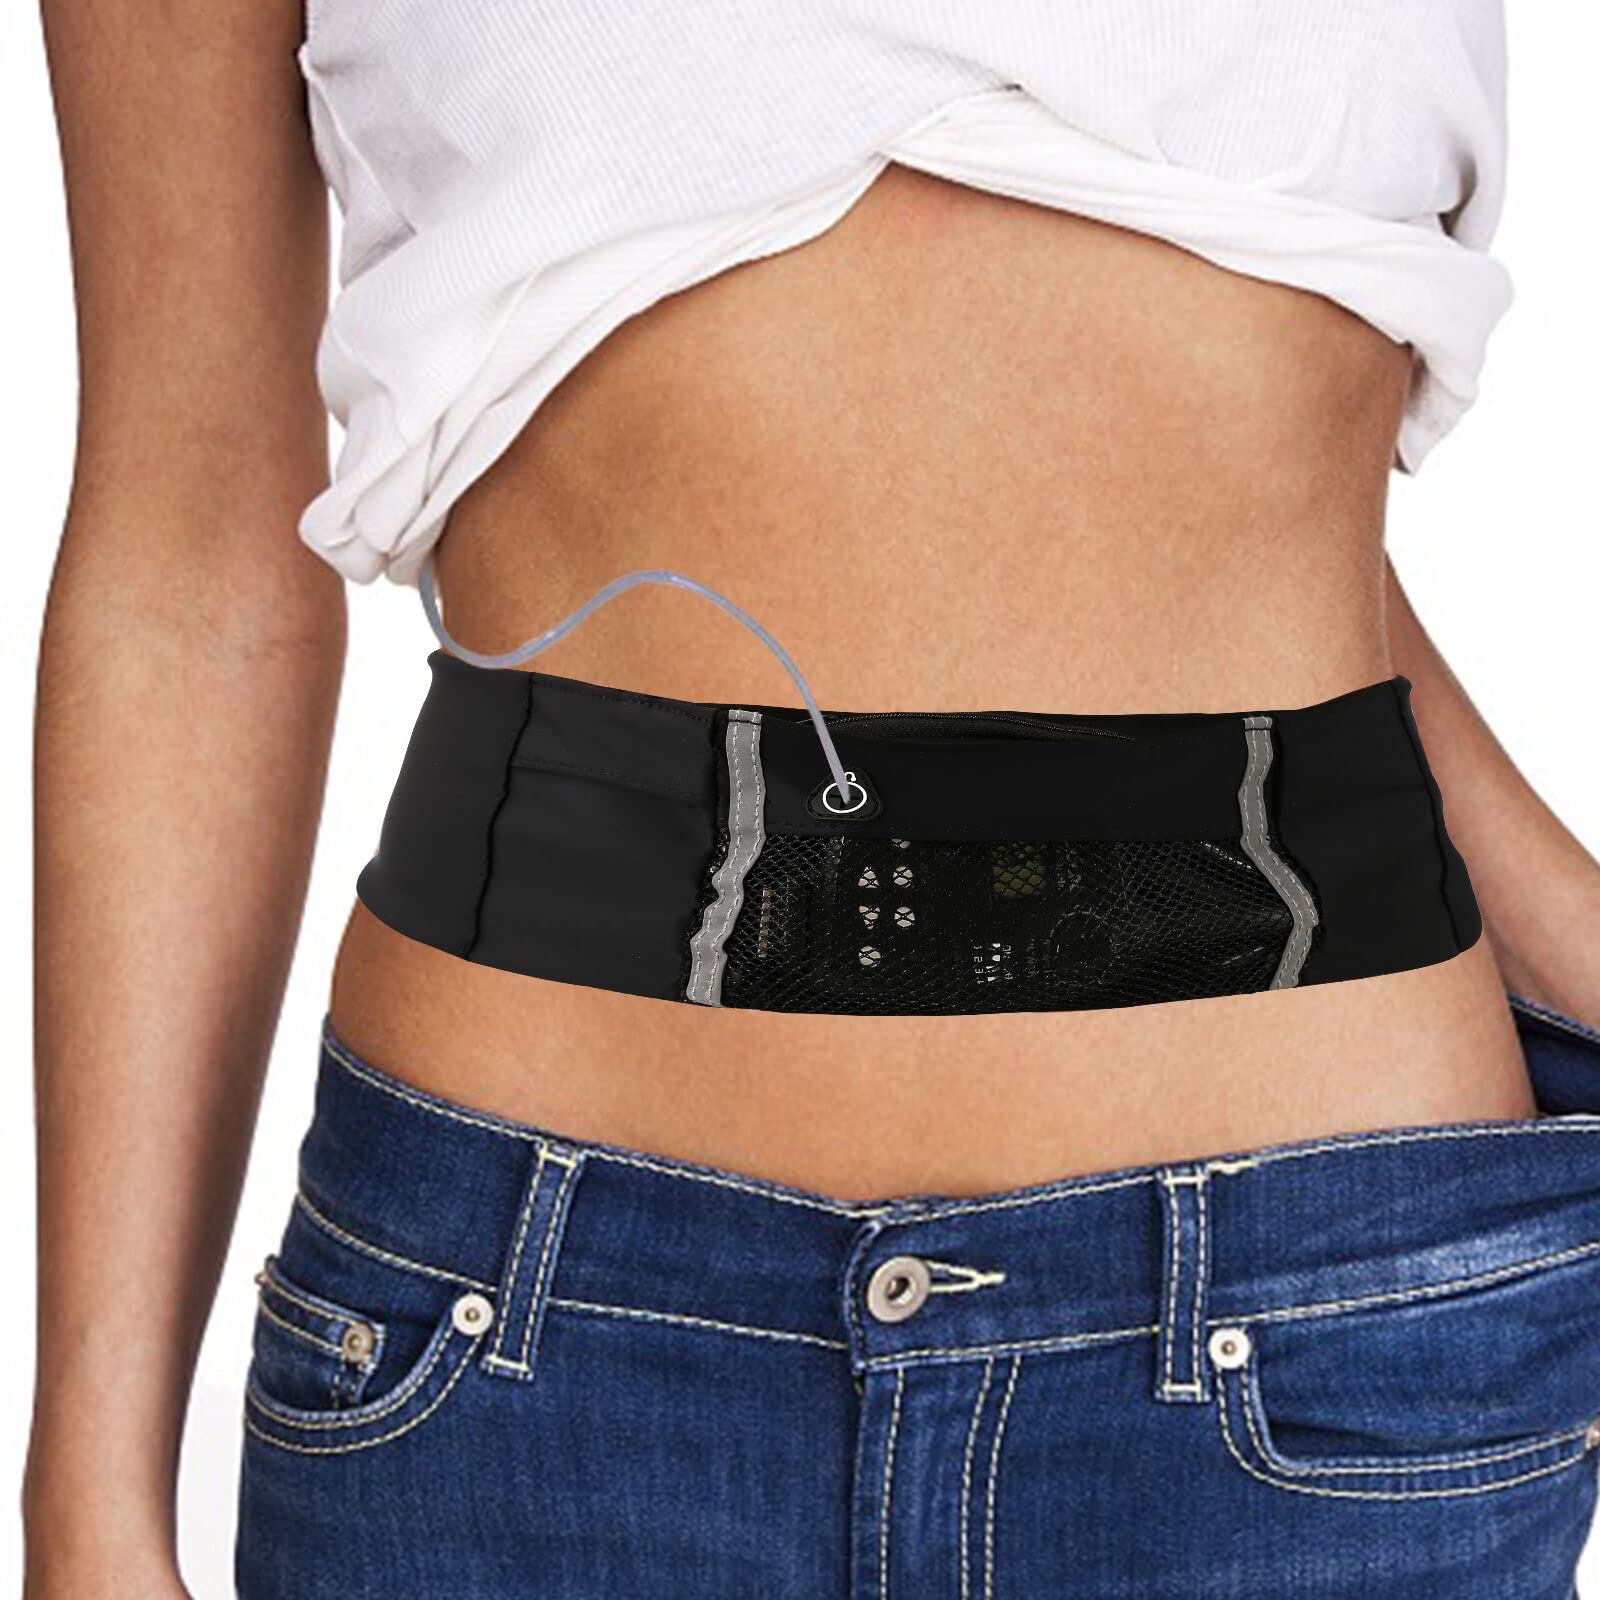 Insulin Pump Waist Belt Discreet Diabetic Waist Band Holder Diabetes  Supplies Pouch and Accessories for Running